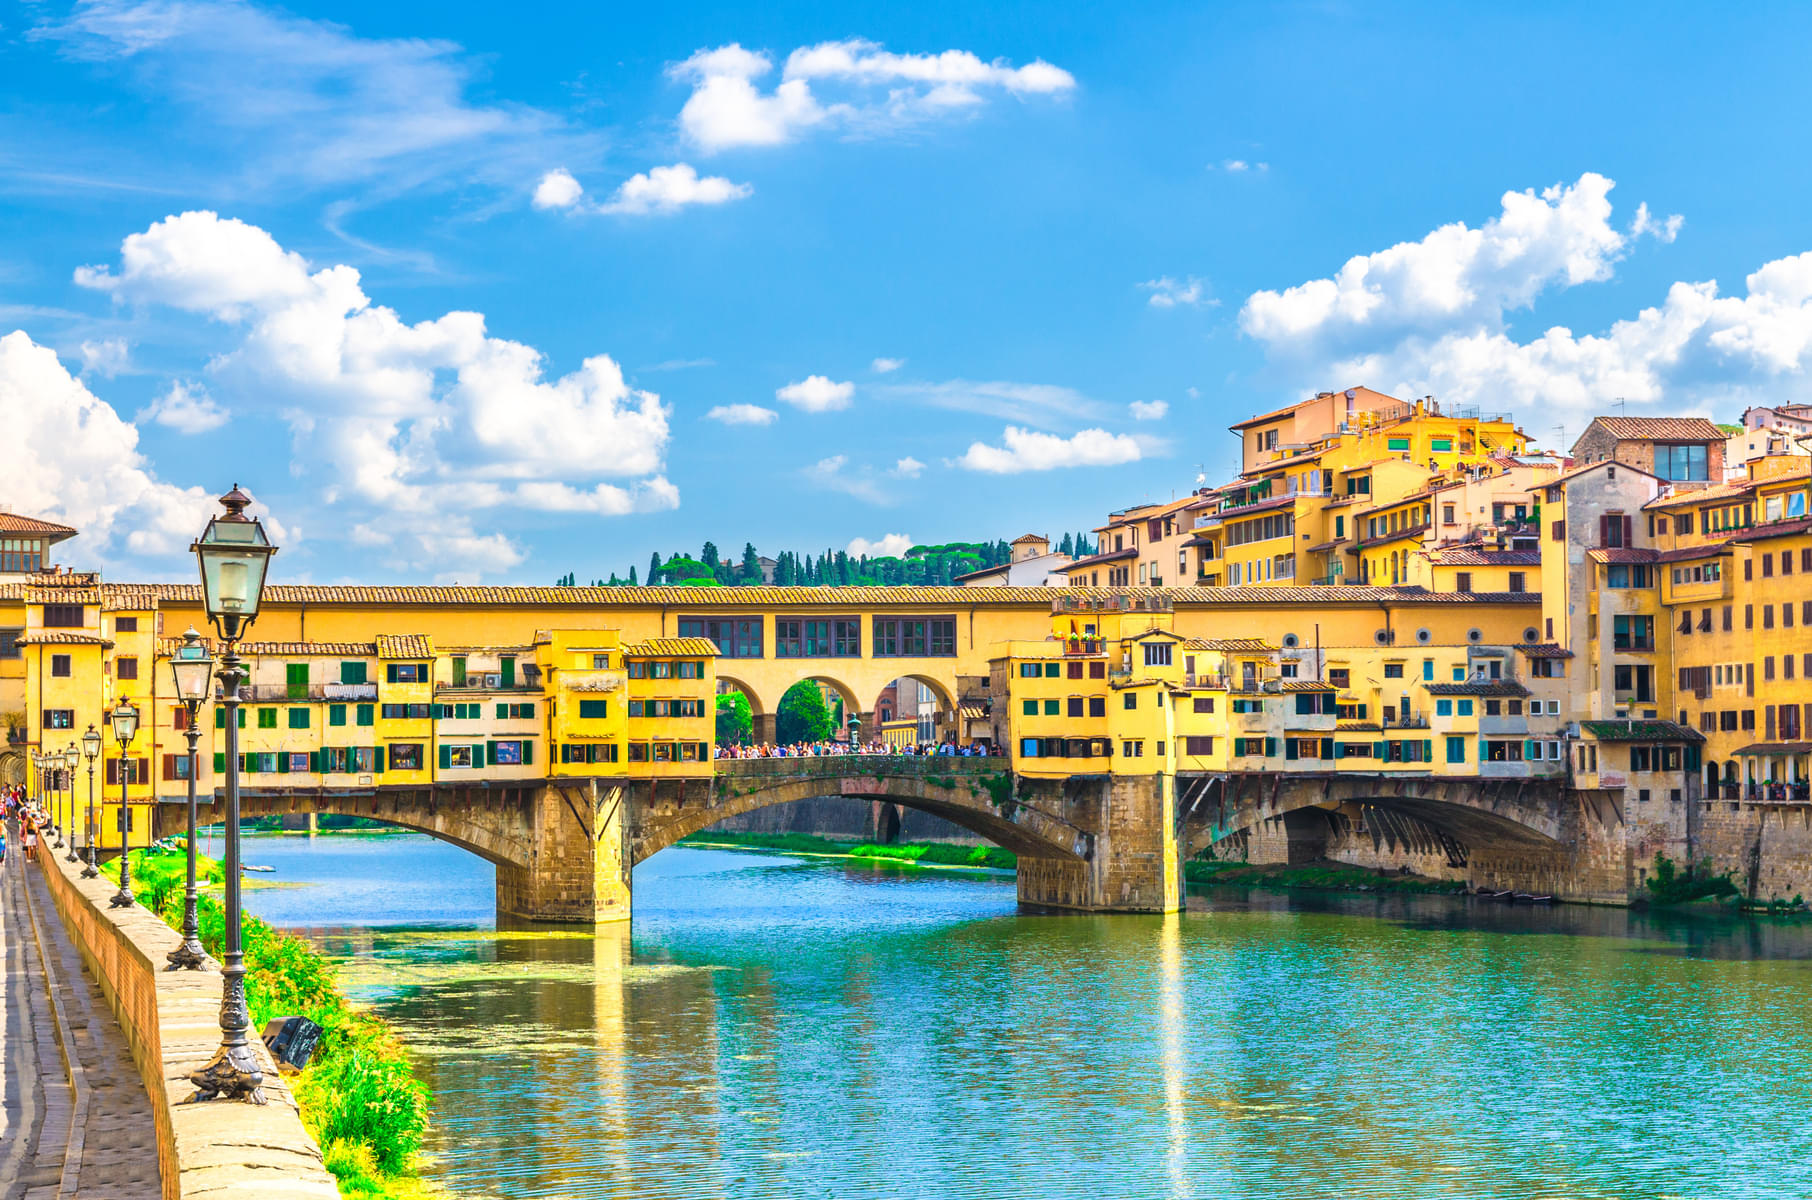 Take A Walk Along The Arno River